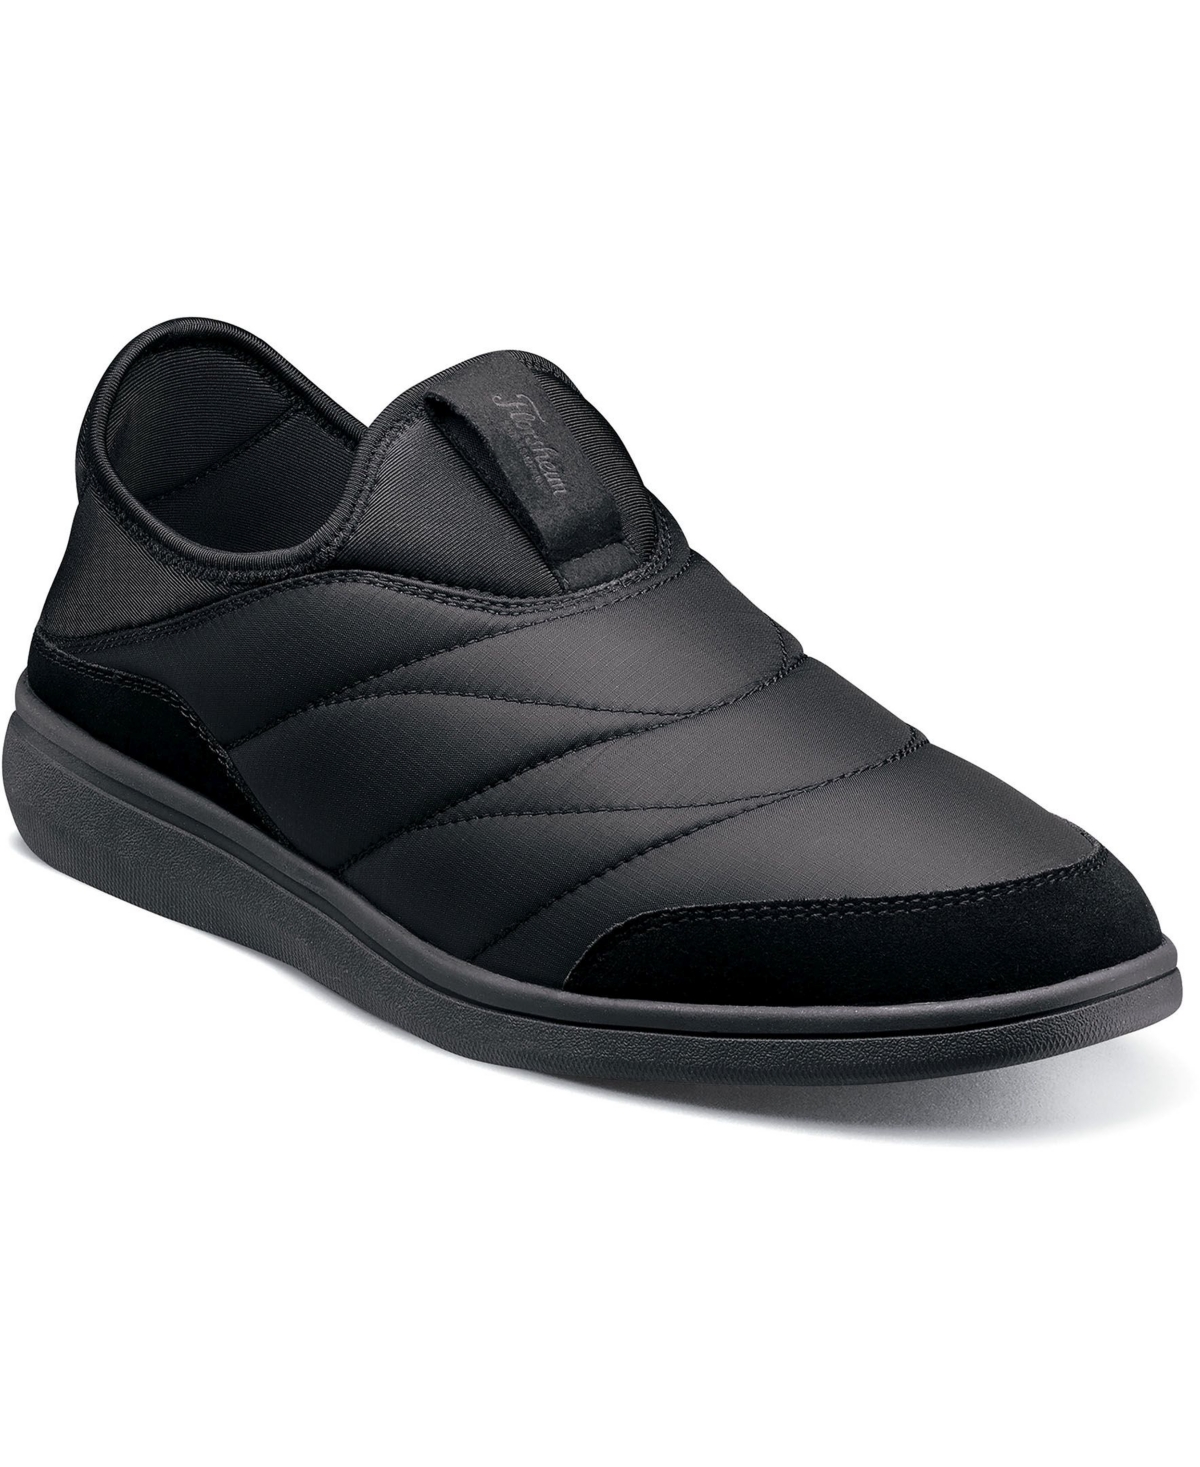 Men's Java Moc Toe Slip-on Shoes - Black